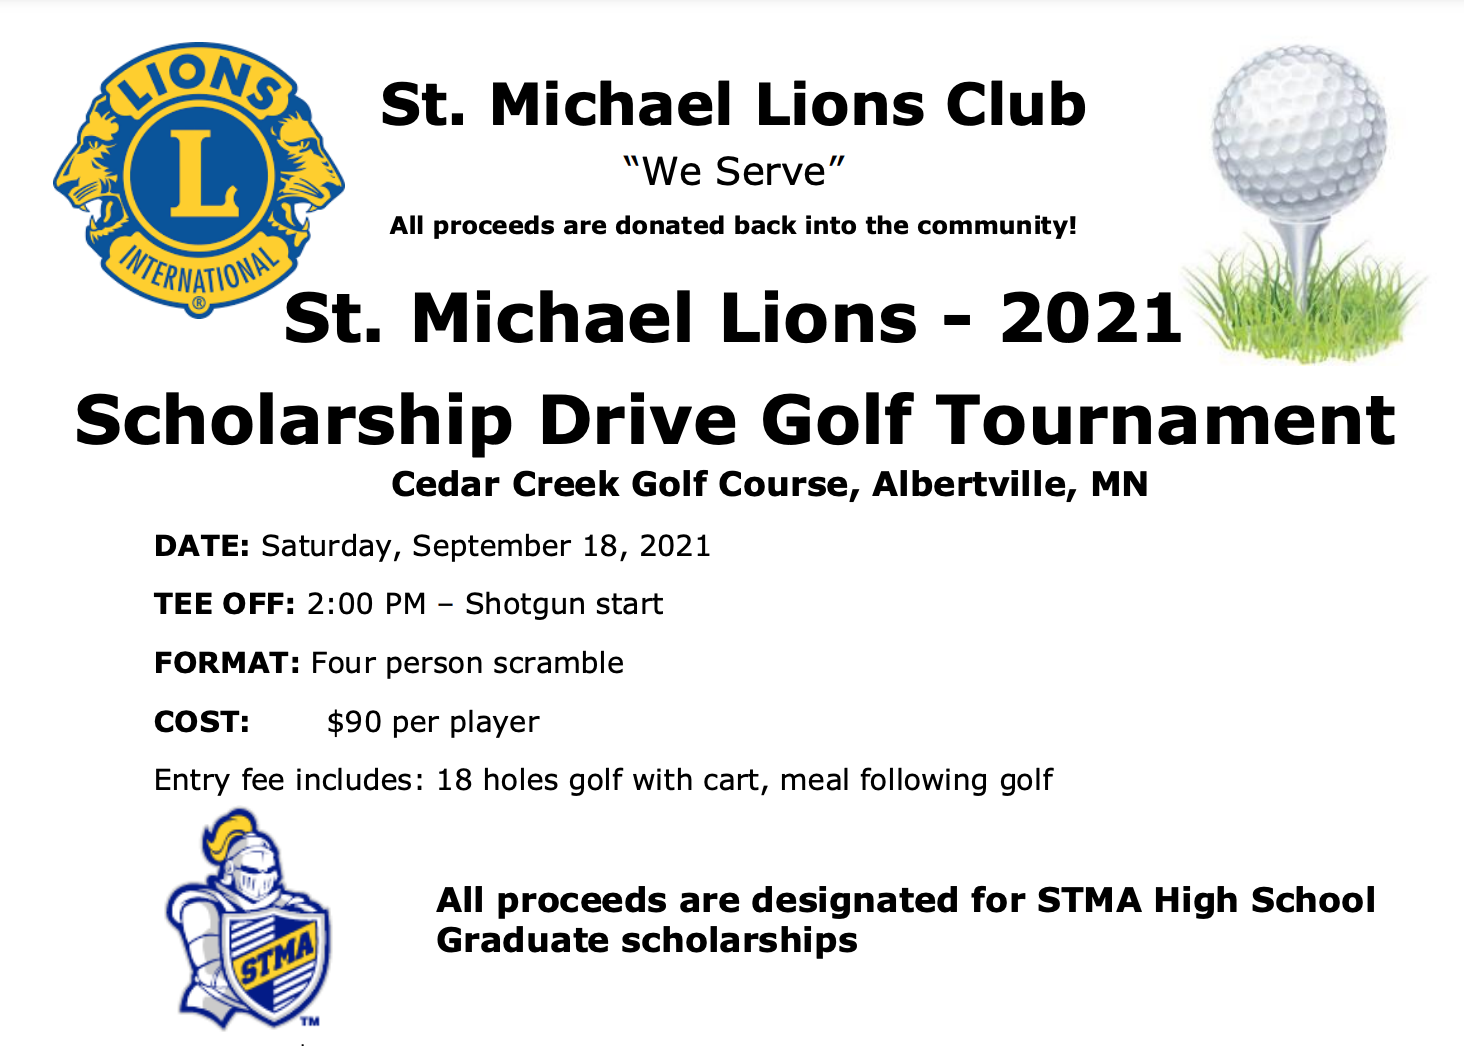 St. Michael Lions - 2021 Scholarship Drive Golf Tournament